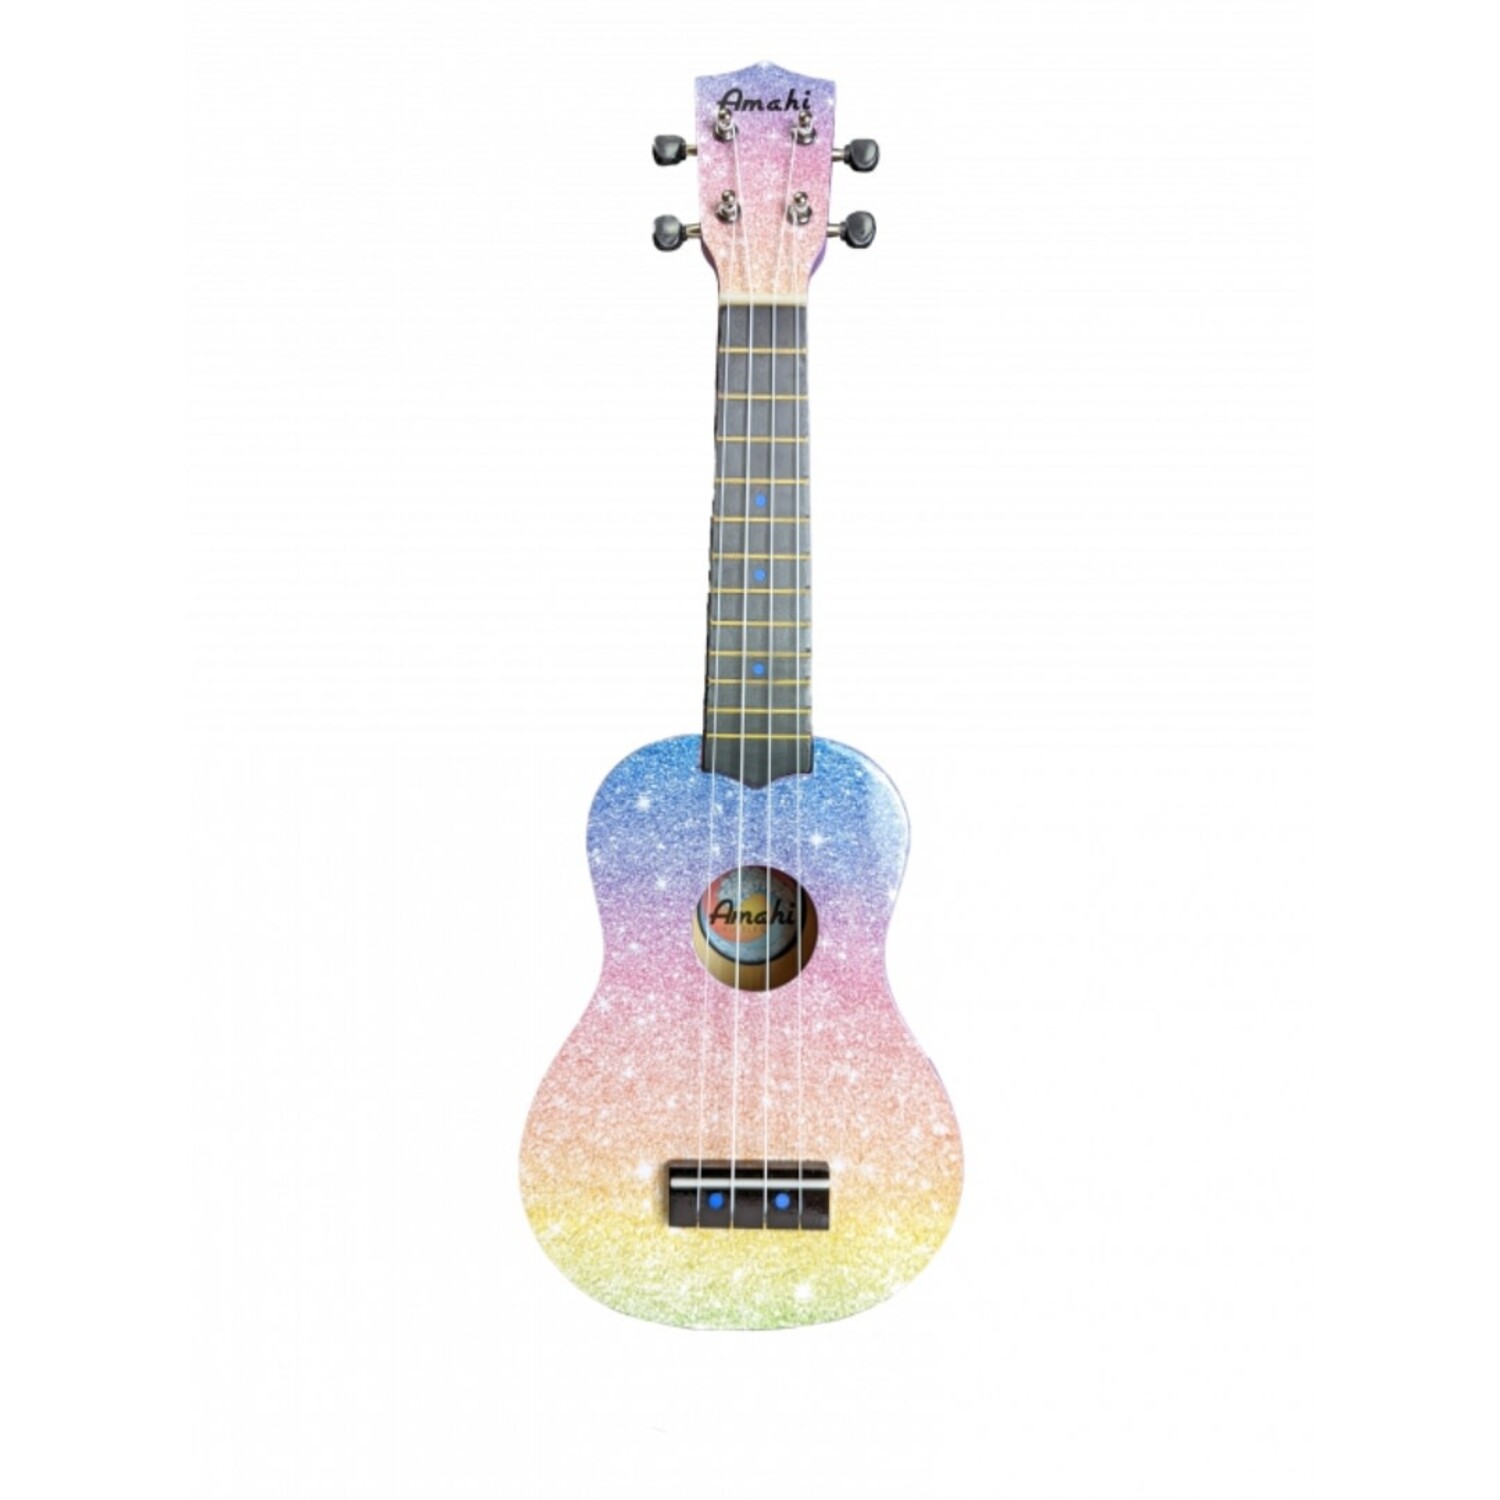 https://cdn.shoplightspeed.com/shops/653480/files/55669539/1500x4000x3/amahi-ukuleles-patterned-amahi-ukulele.jpg